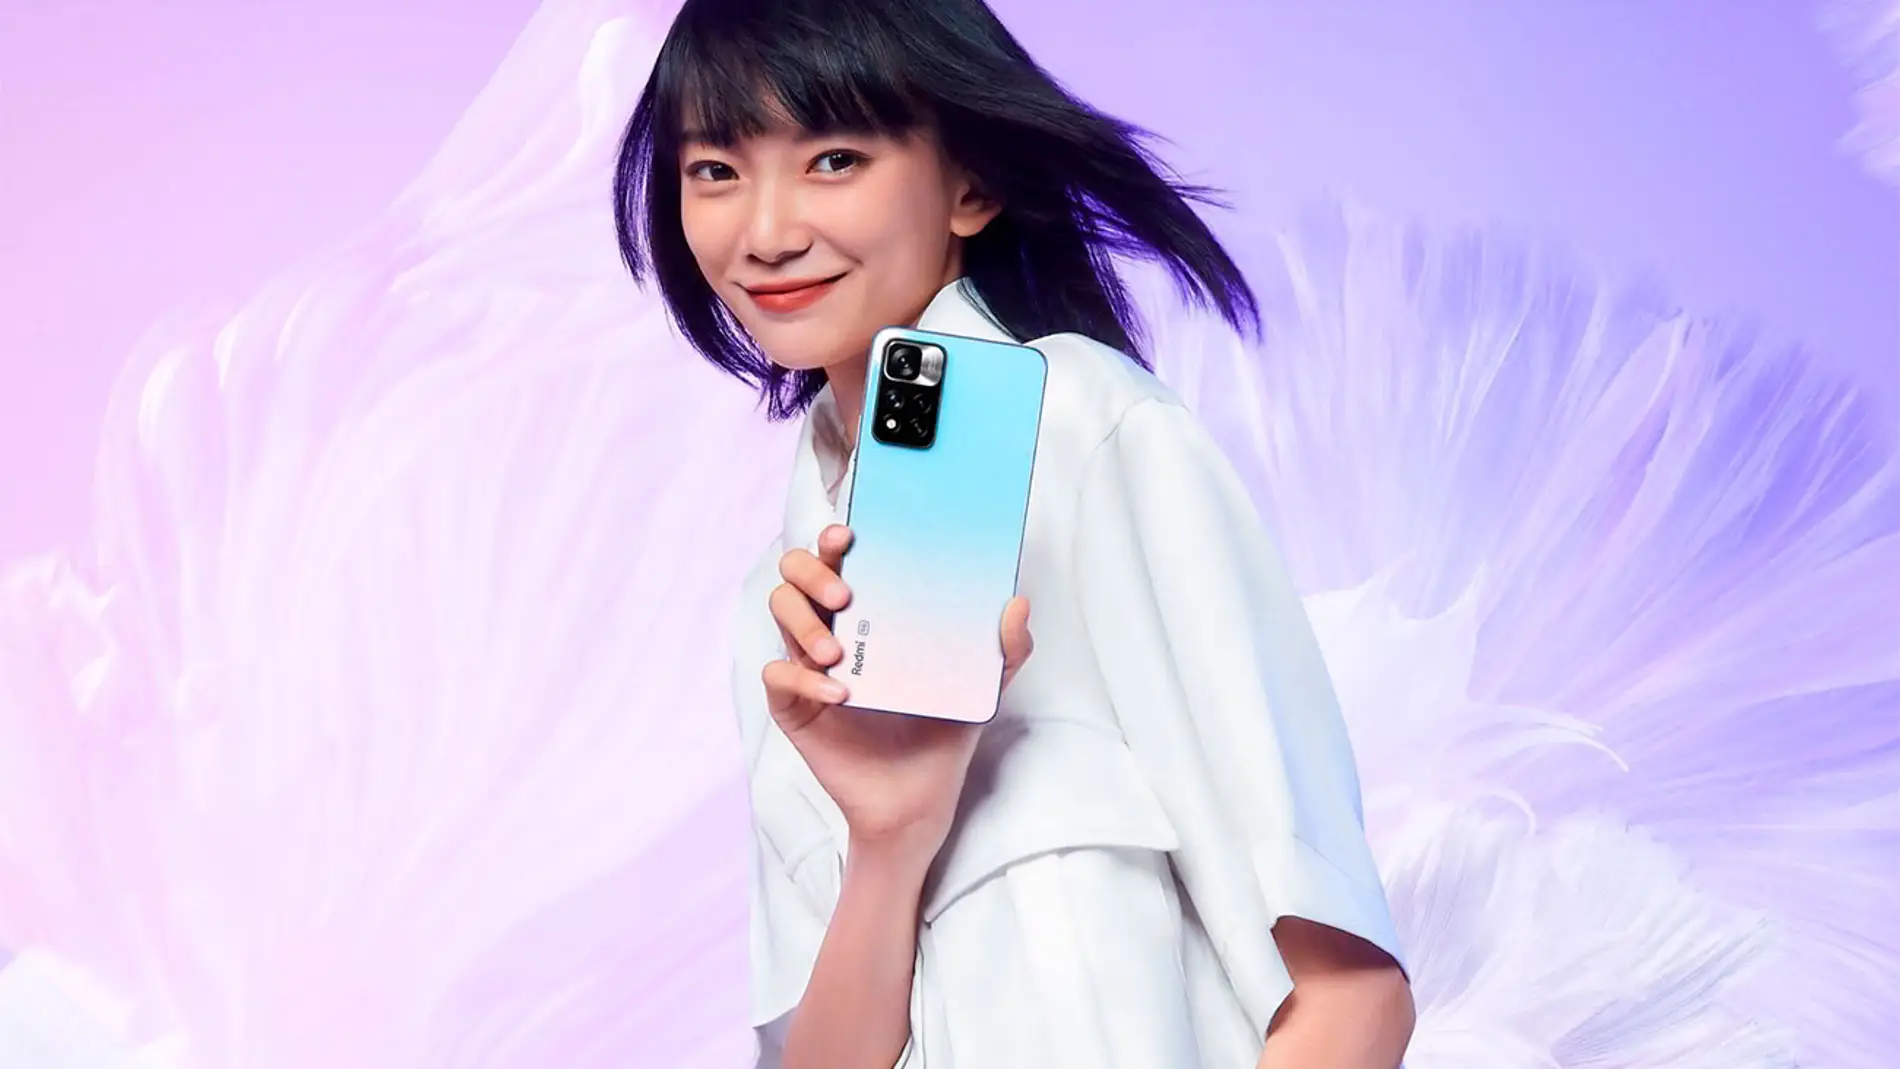 Xiaomi presenta el Redmi Note 12 Pro 4G, un viejo conocido con un nuevo  disfraz